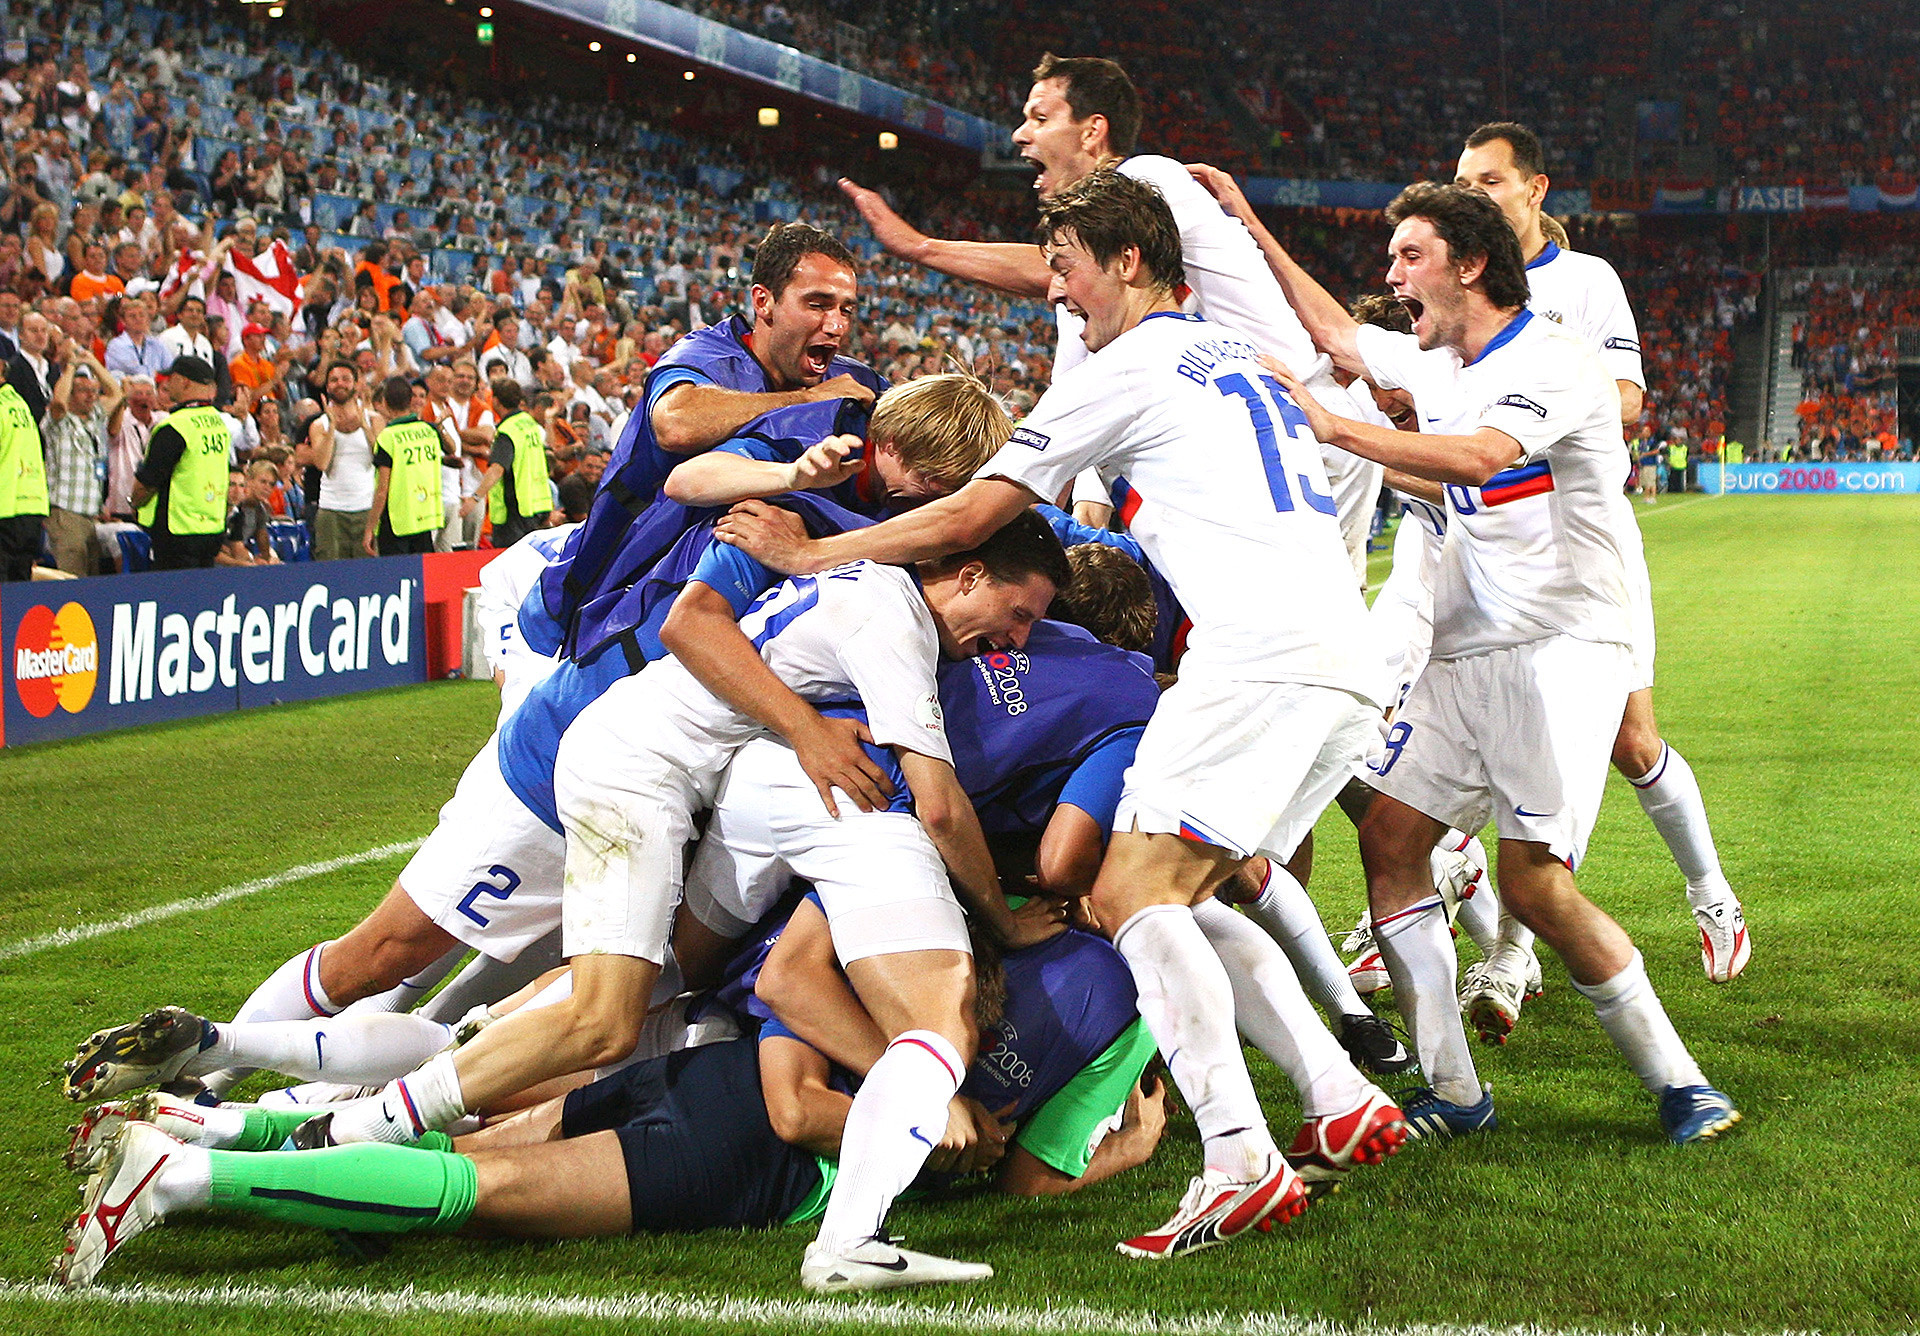 Vitória sobre Holanda em 2008 foi momento de euforia para a seleção russa, mas, desde então, situação permanece desfavorável para a equipe